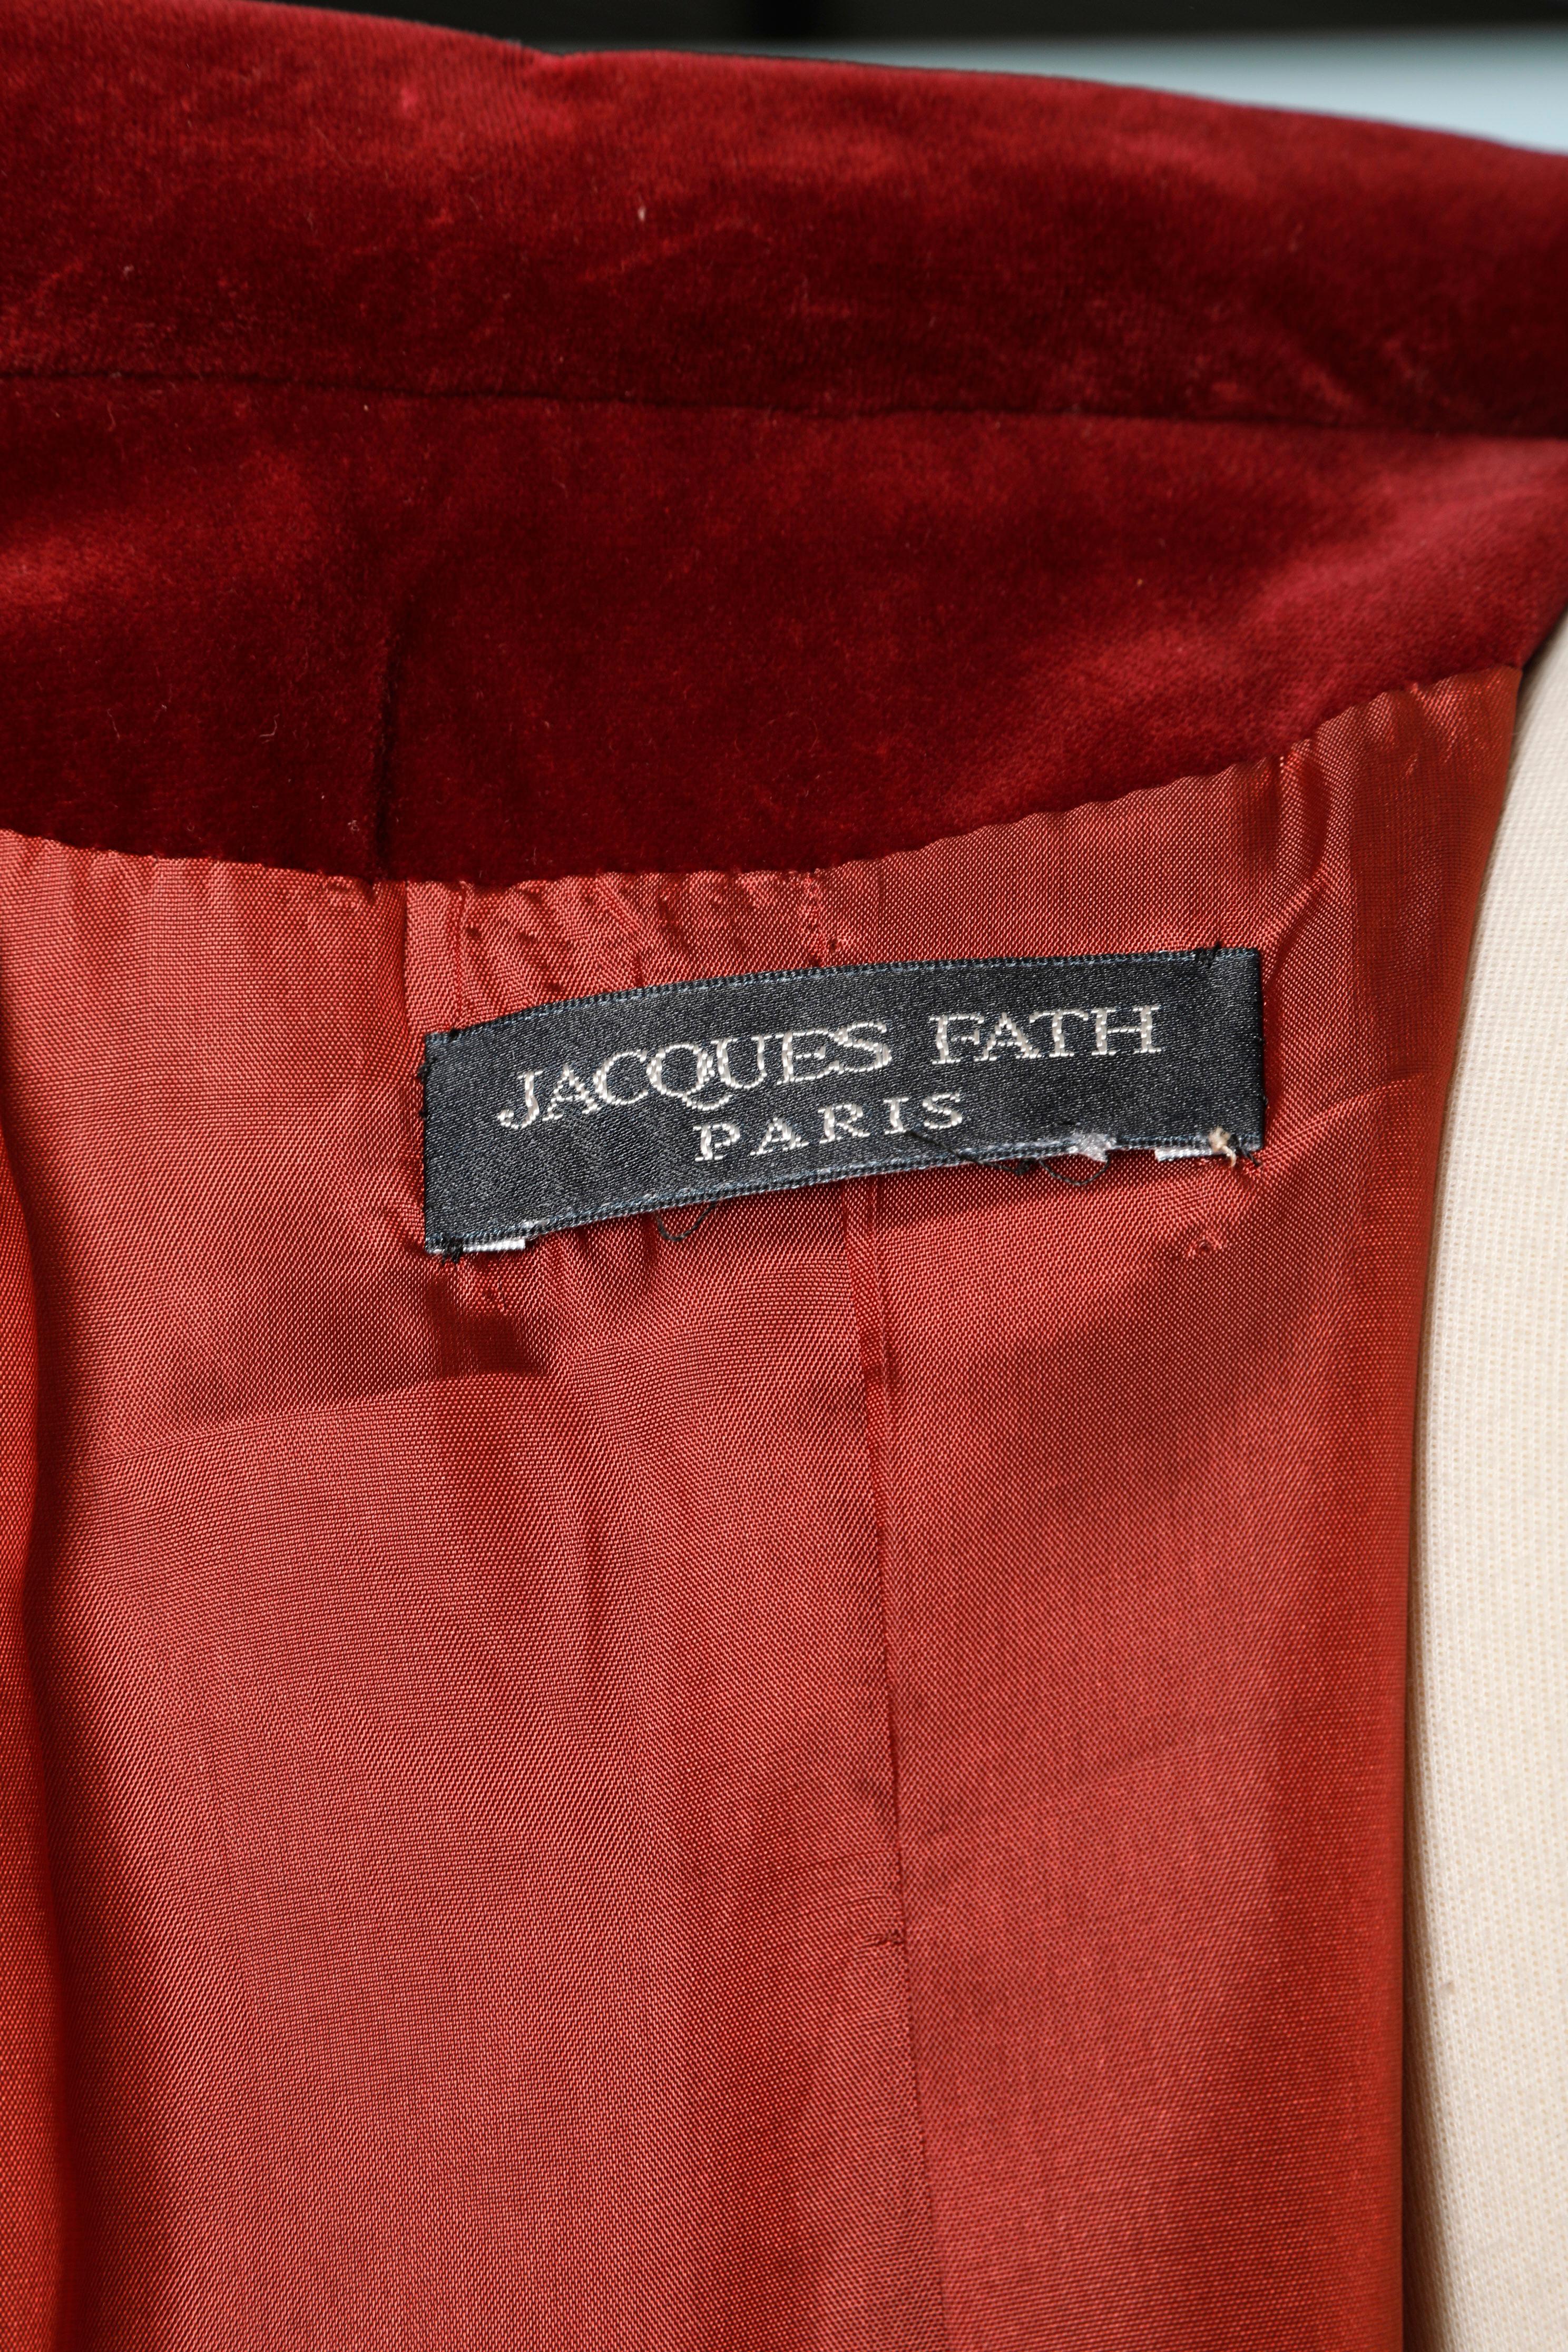 Jacques Fath Paris long damasked coat 4